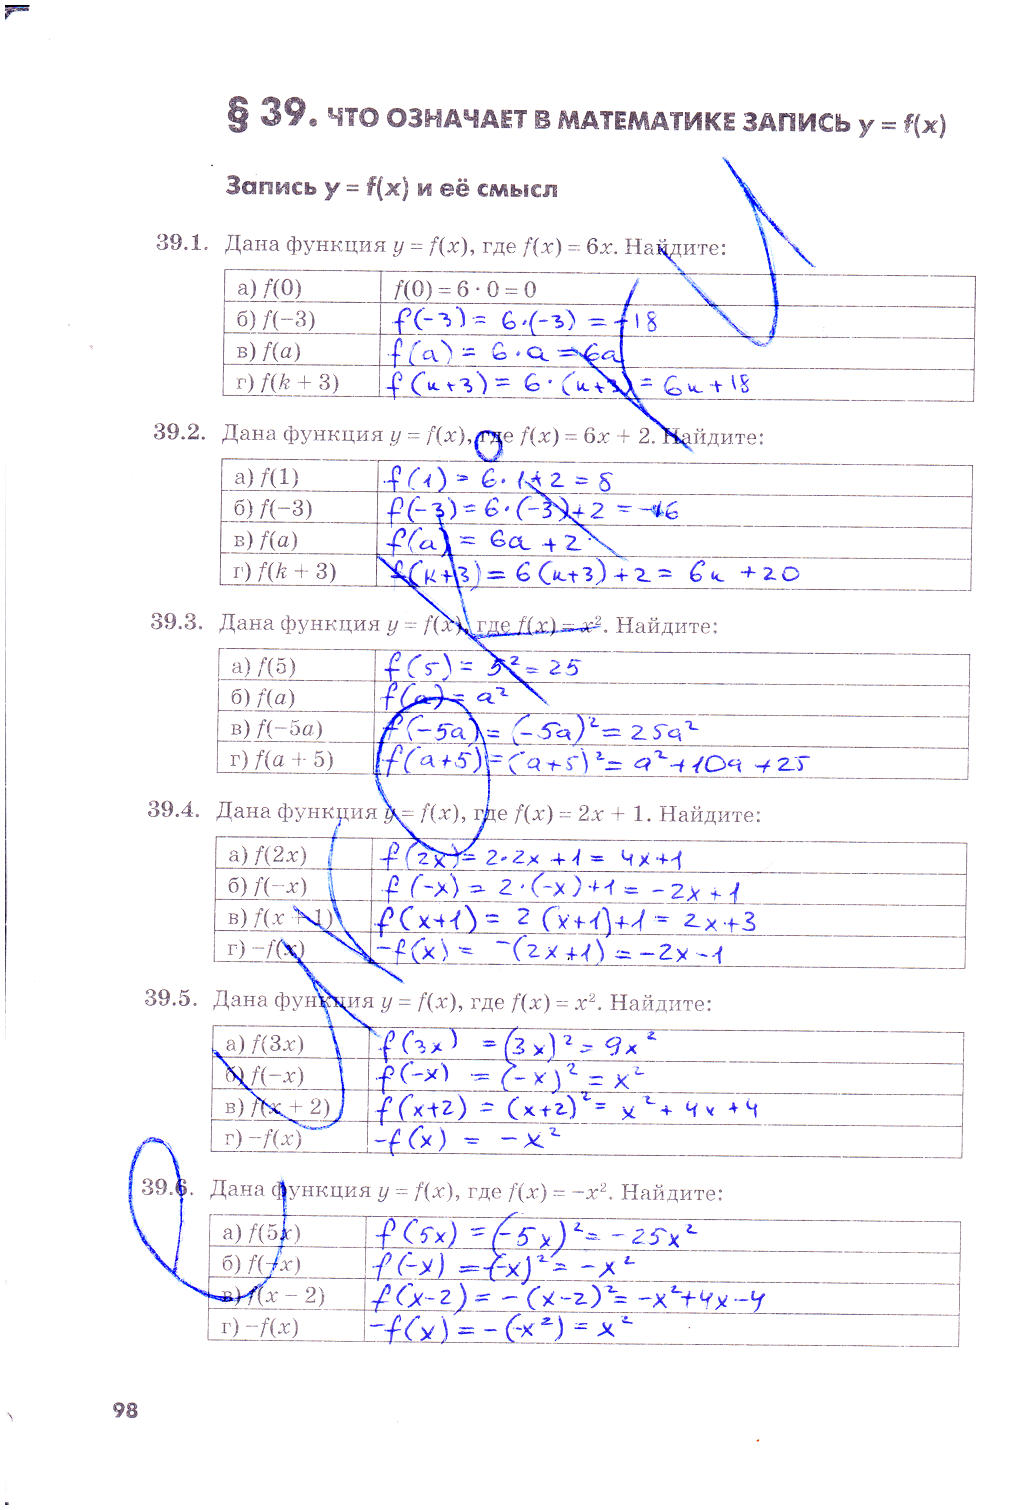 гдз 7 класс рабочая тетрадь часть 2 страница 98 алгебра Зубарева, Мильштейн